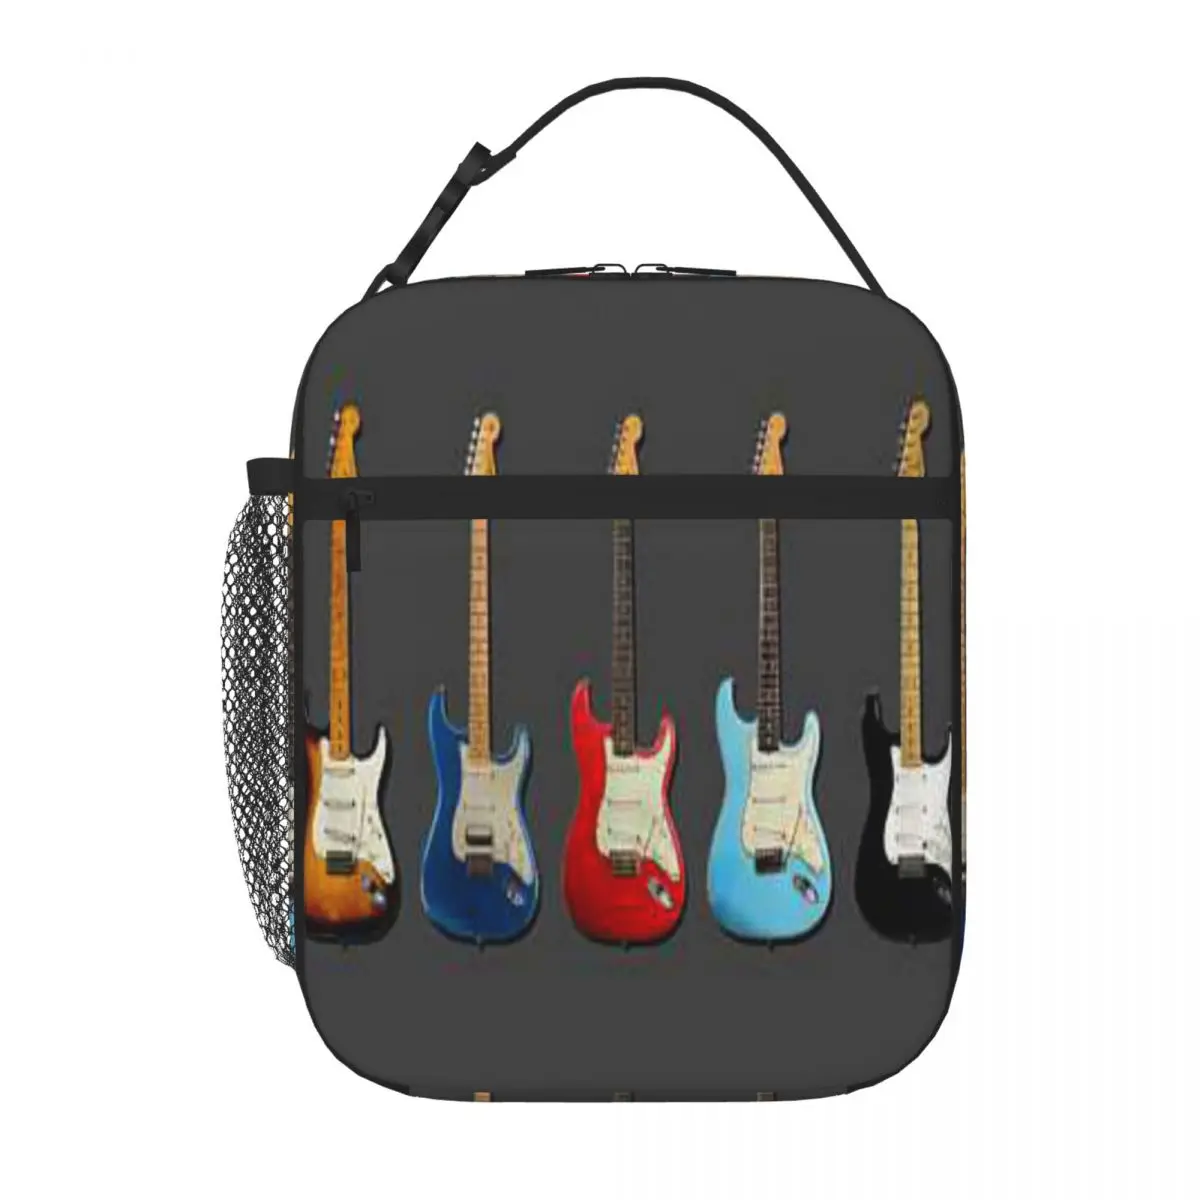 

Прозрачная сумка для ланча Stratocaster Mark Rogan, Ланч-бокс для пикника, Детская сумка для ланча